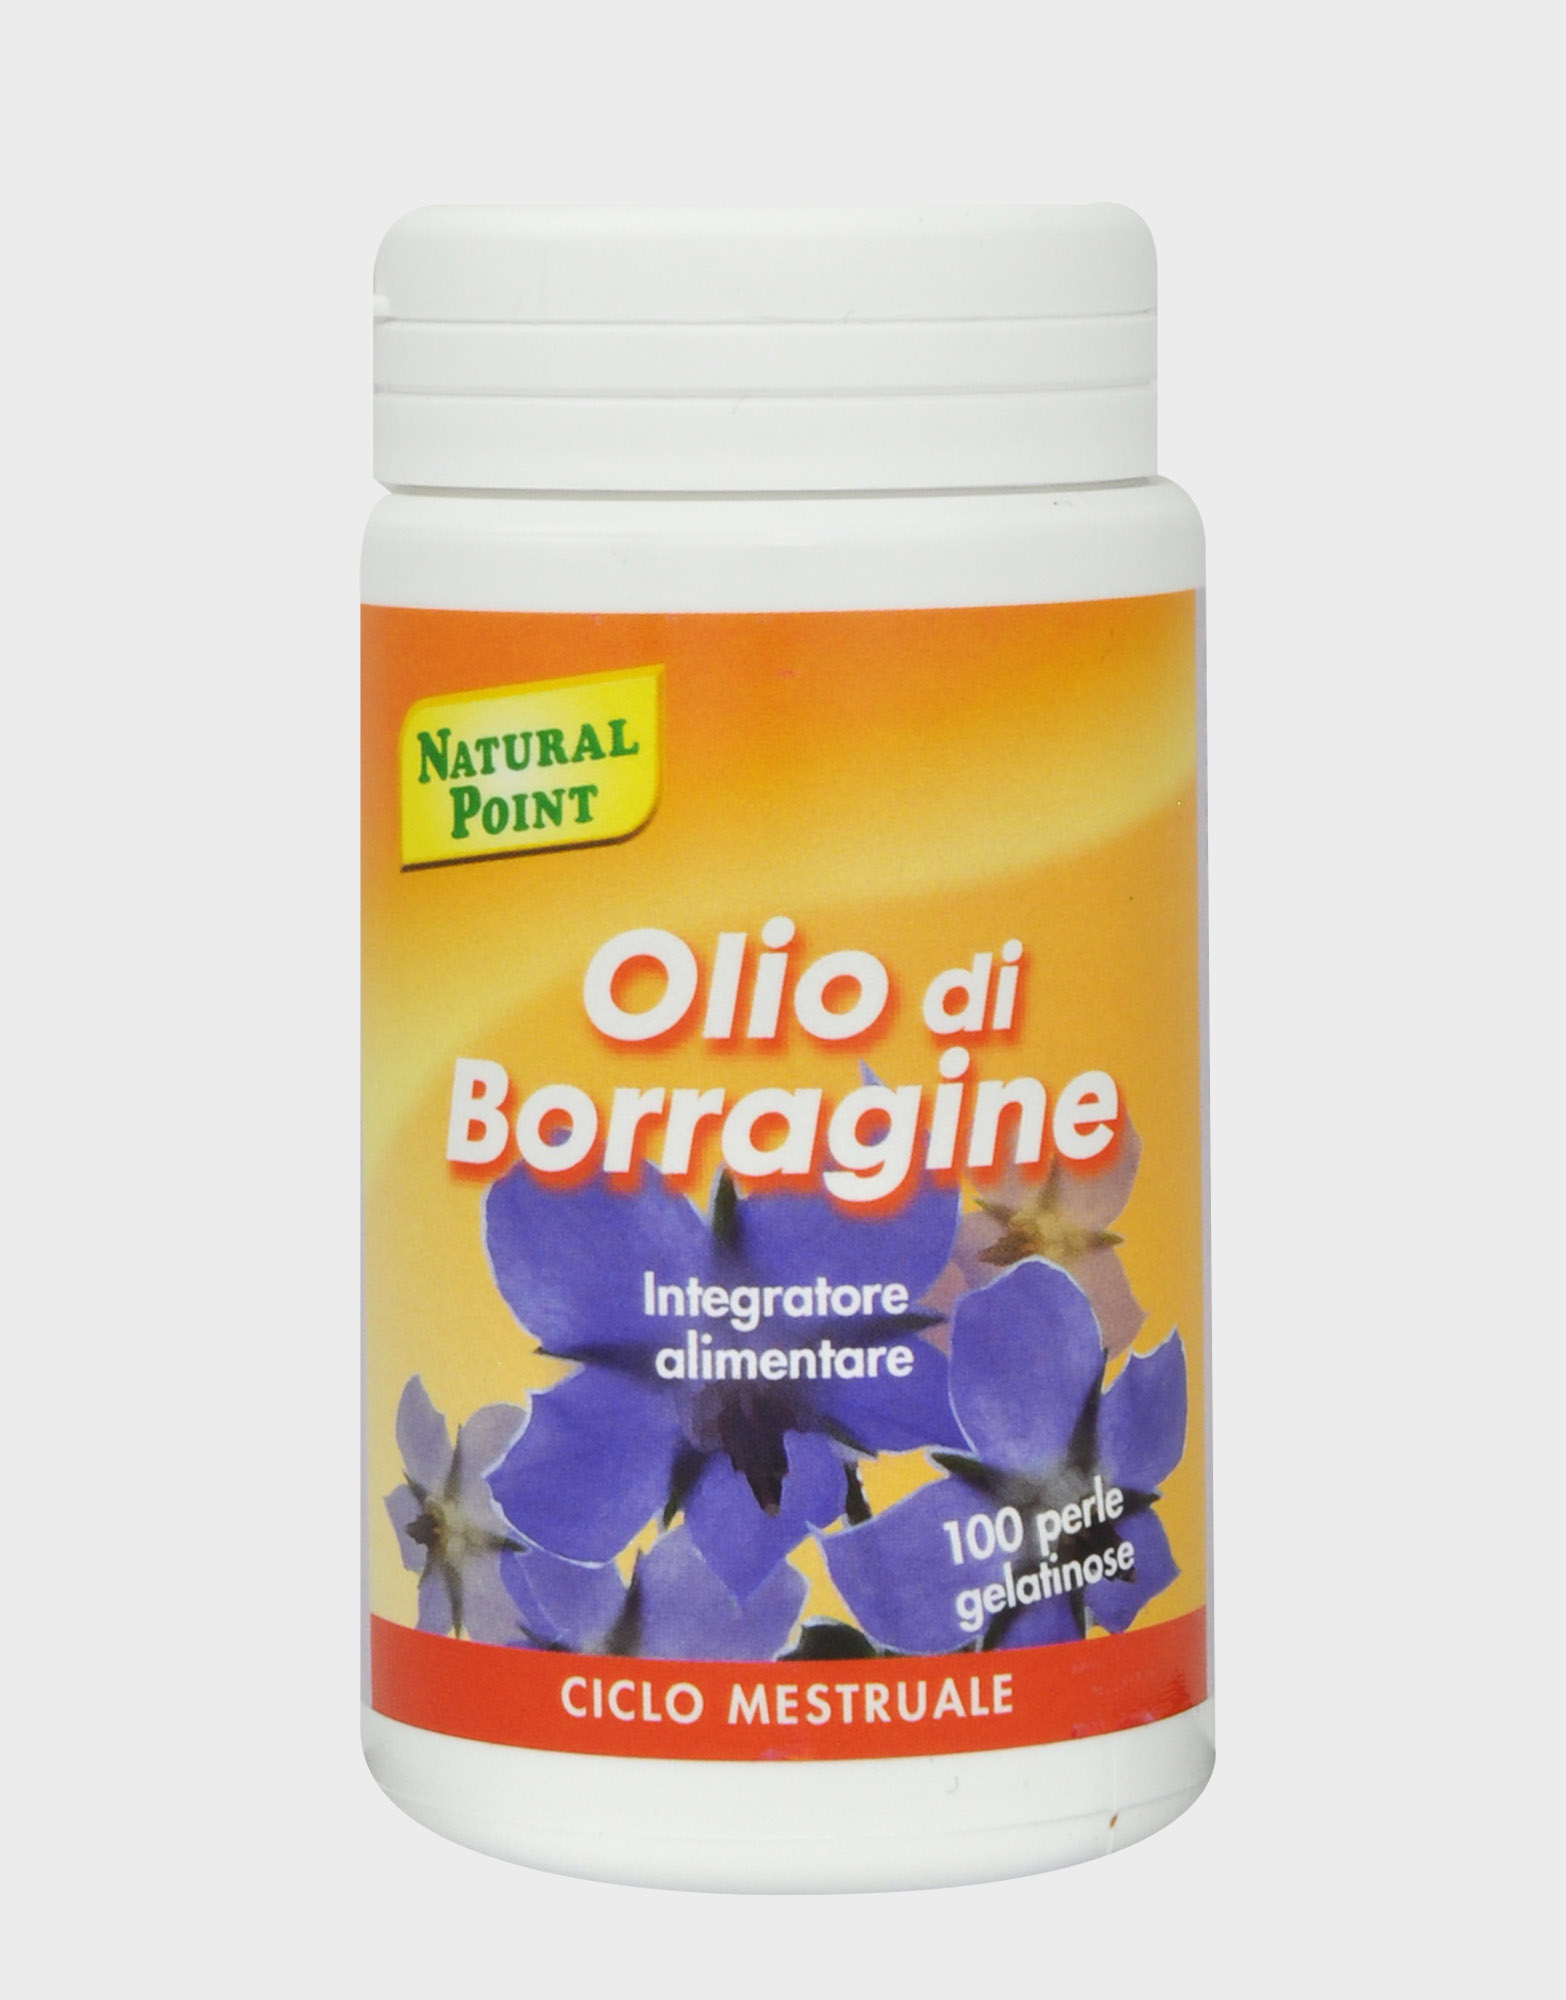 NATURAL POINT olio di borragine efficace nei disturbi legati al ciclo mestruale e per ridurre il colesterolo 50 perle